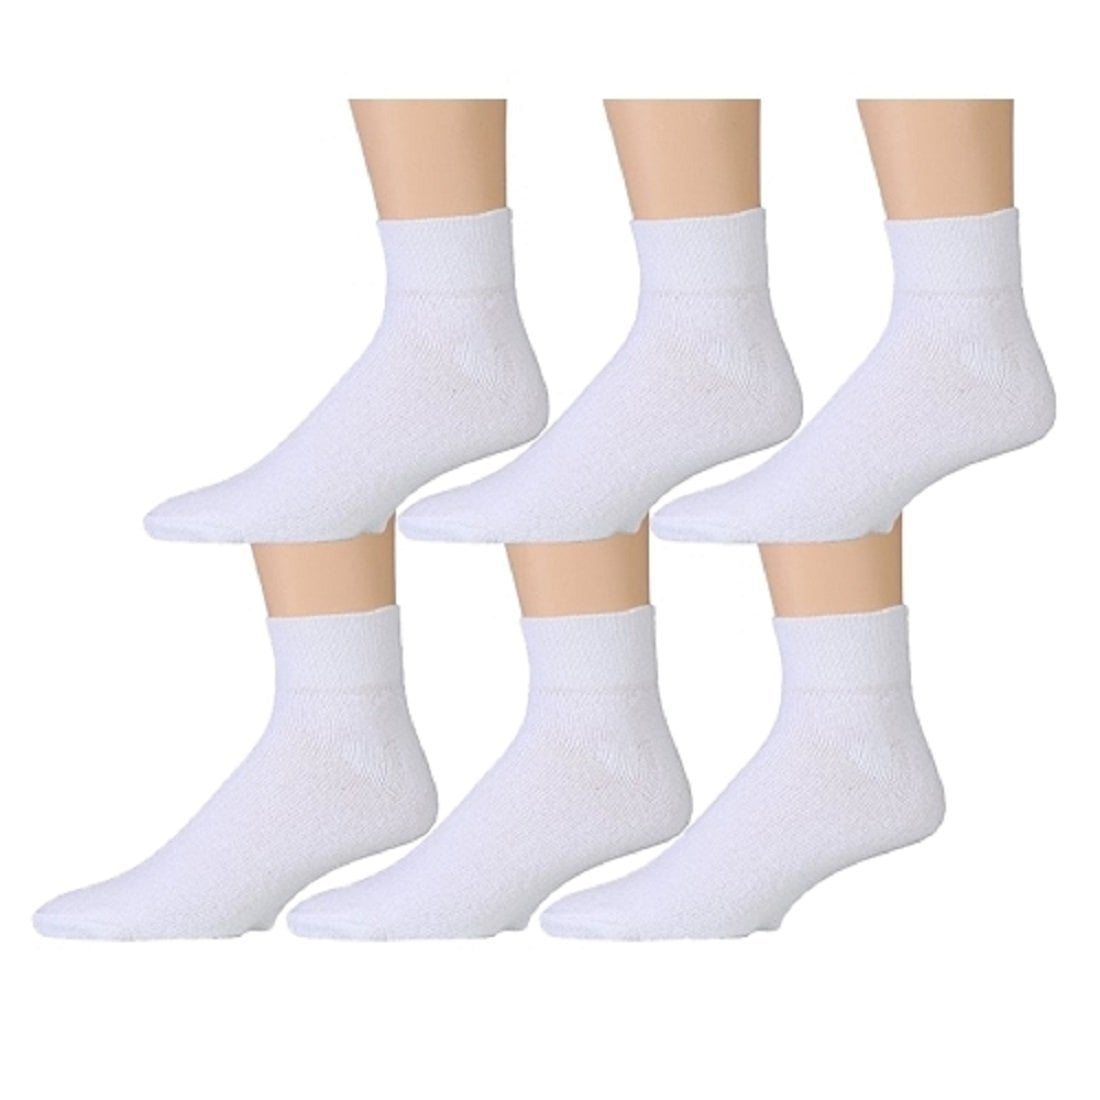 Men's white crew socks size 10-13 usa made gray heel toe 3 pairs cushion jogger 